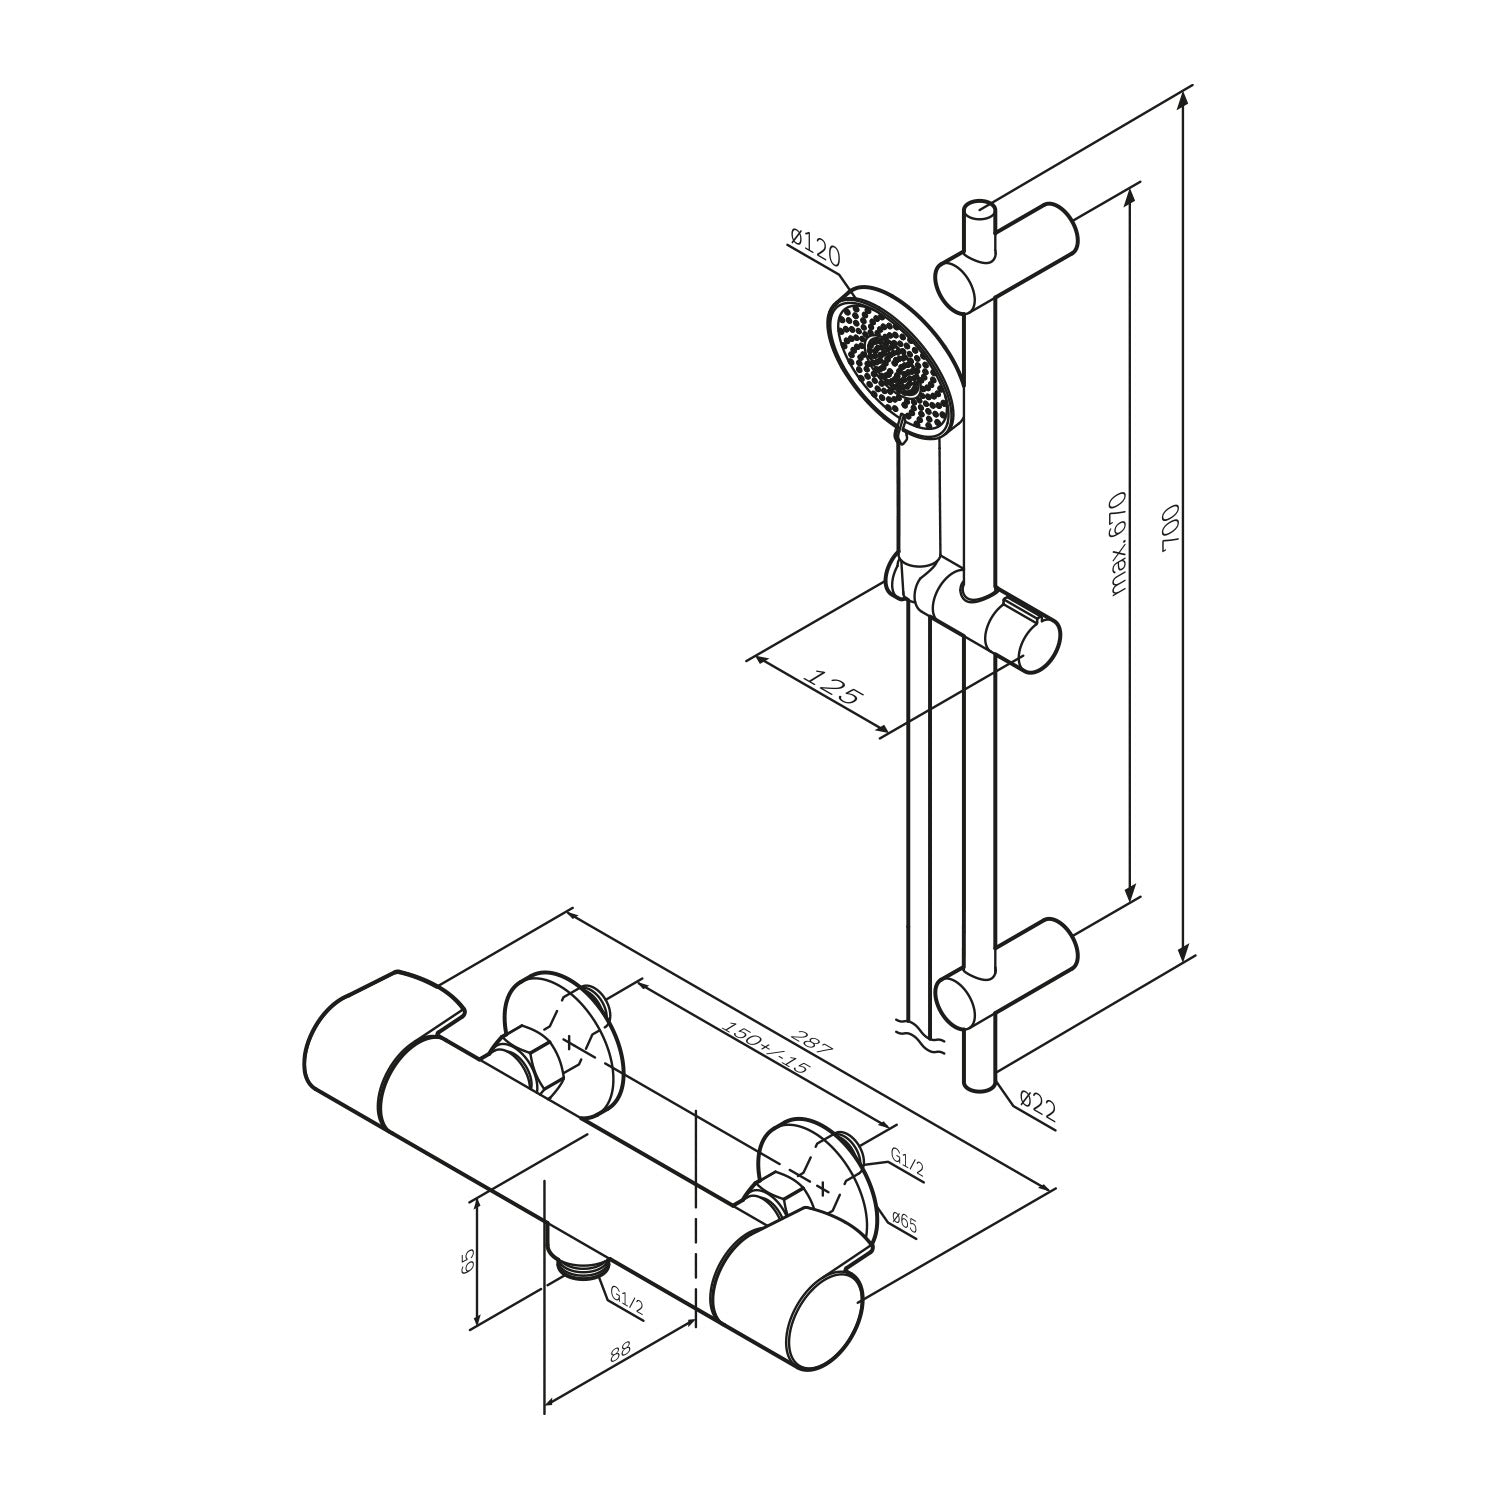 F428XA46 X-Joy Armaturen-Set: Thermostat Duscharmatur und Duschset, schwarz